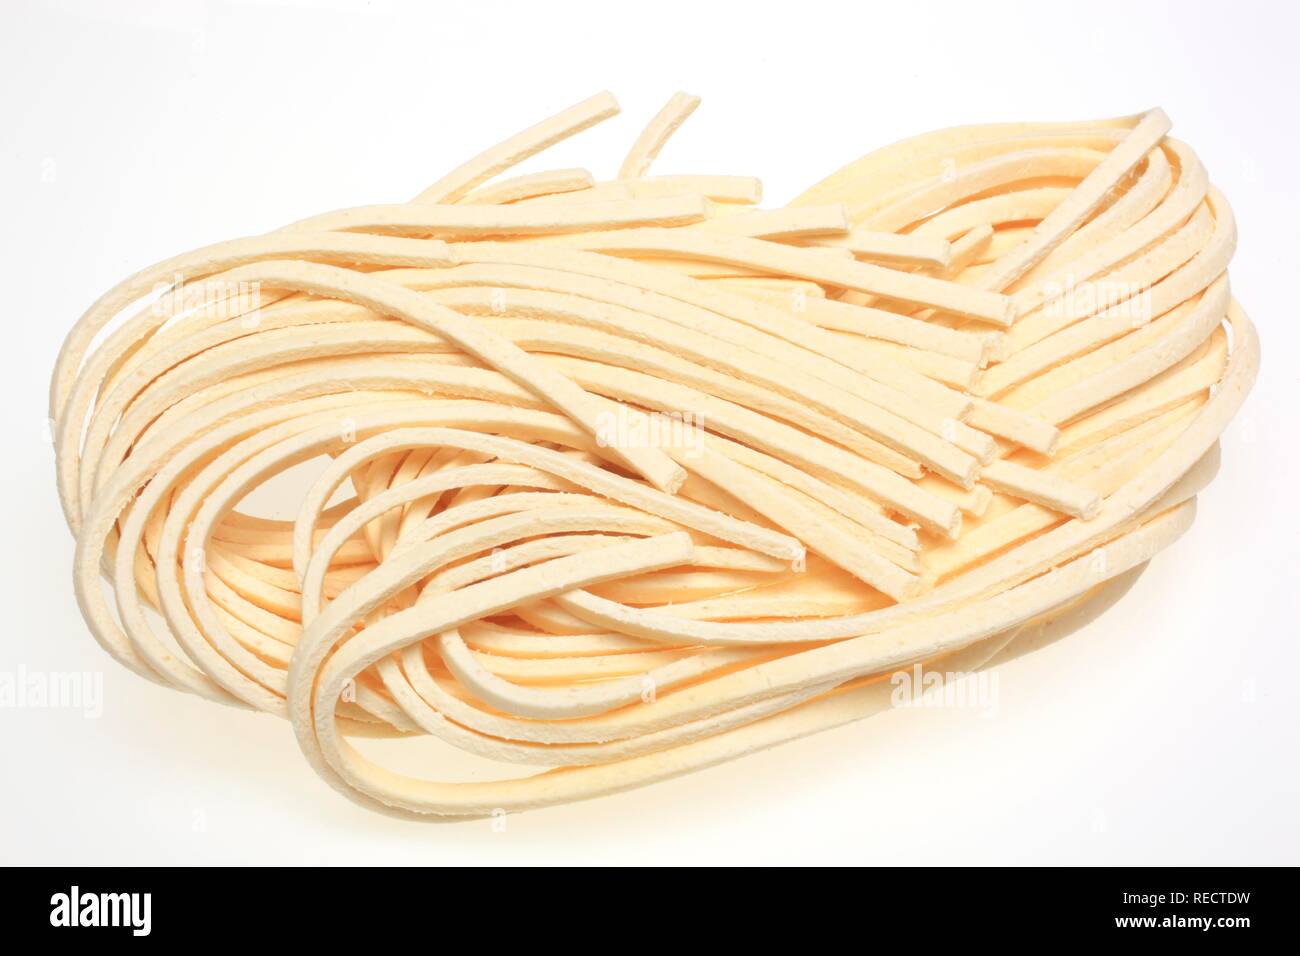 Stringozzi, pasta di semola di grano duro originariamente da Umbria, Italia Foto Stock